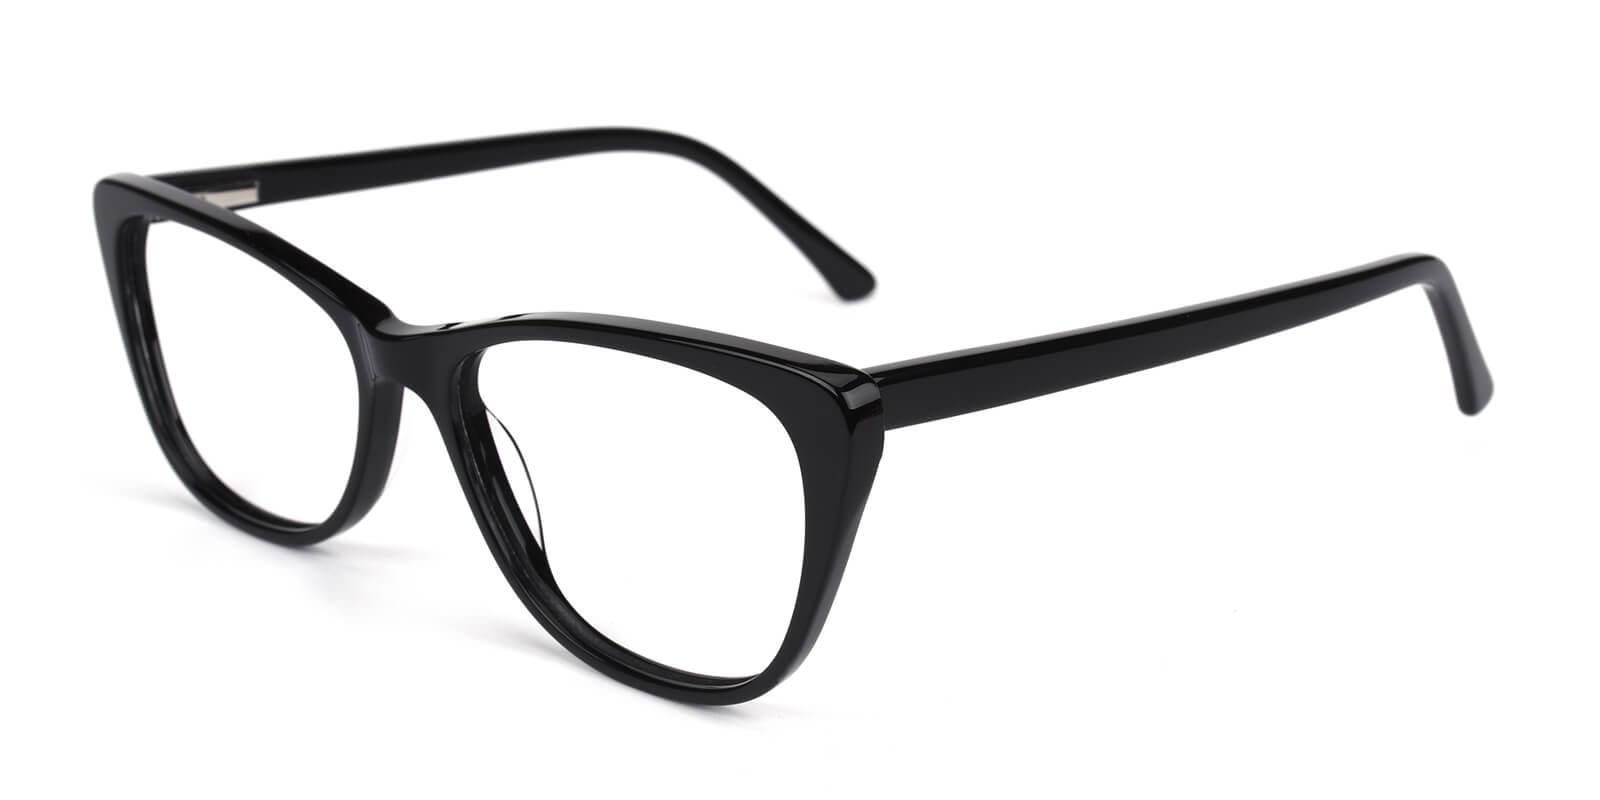 Tersaki-Black-Cat / Rectangle-Acetate-Eyeglasses-detail